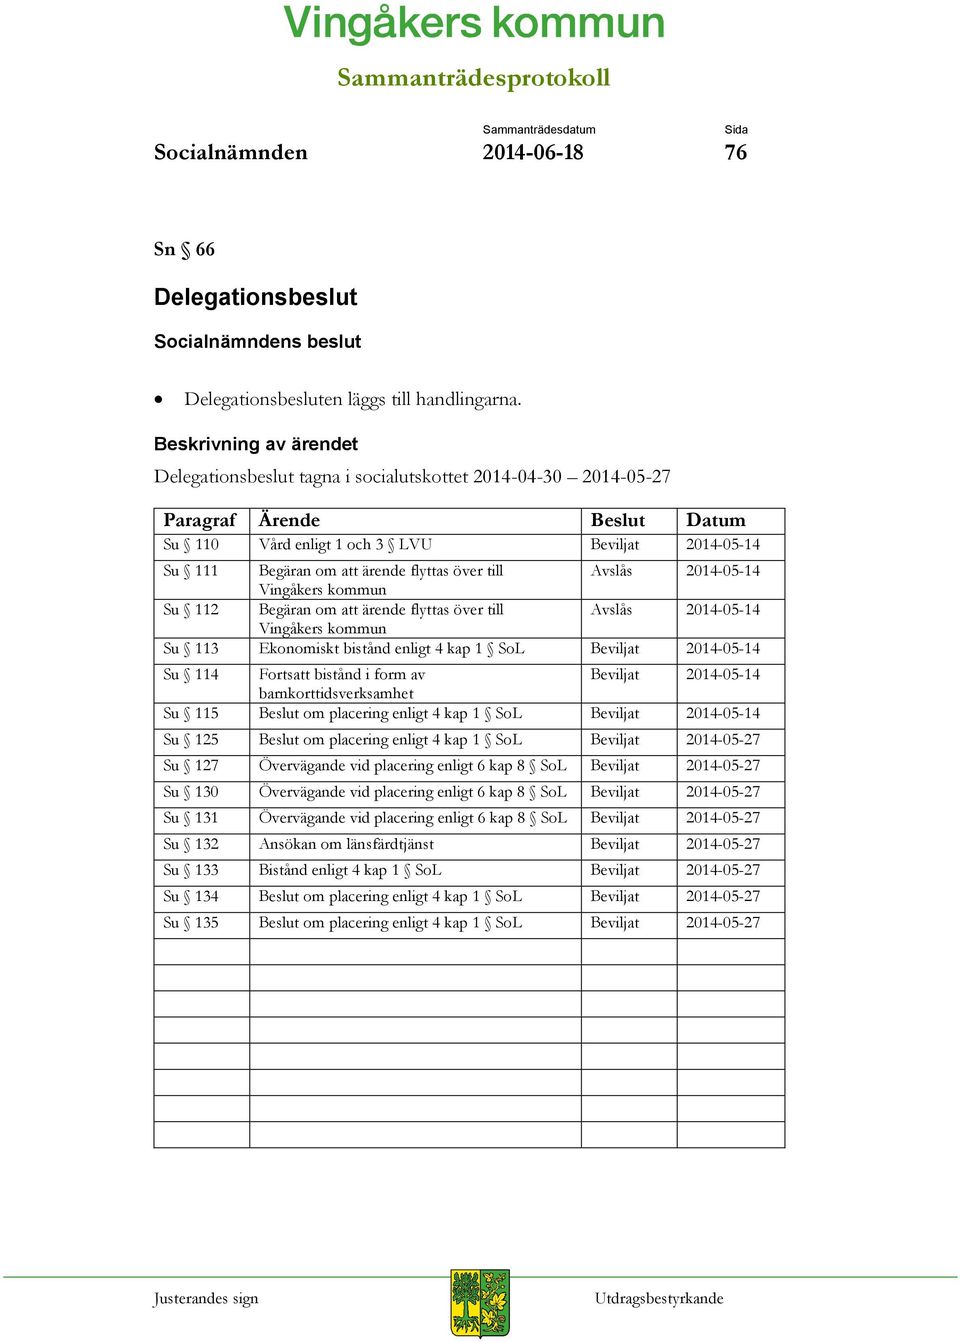 2014-05-14 Vingåkers kommun Su 112 Begäran om att ärende flyttas över till Avslås 2014-05-14 Vingåkers kommun Su 113 Ekonomiskt bistånd enligt 4 kap 1 SoL Beviljat 2014-05-14 Su 114 Fortsatt bistånd